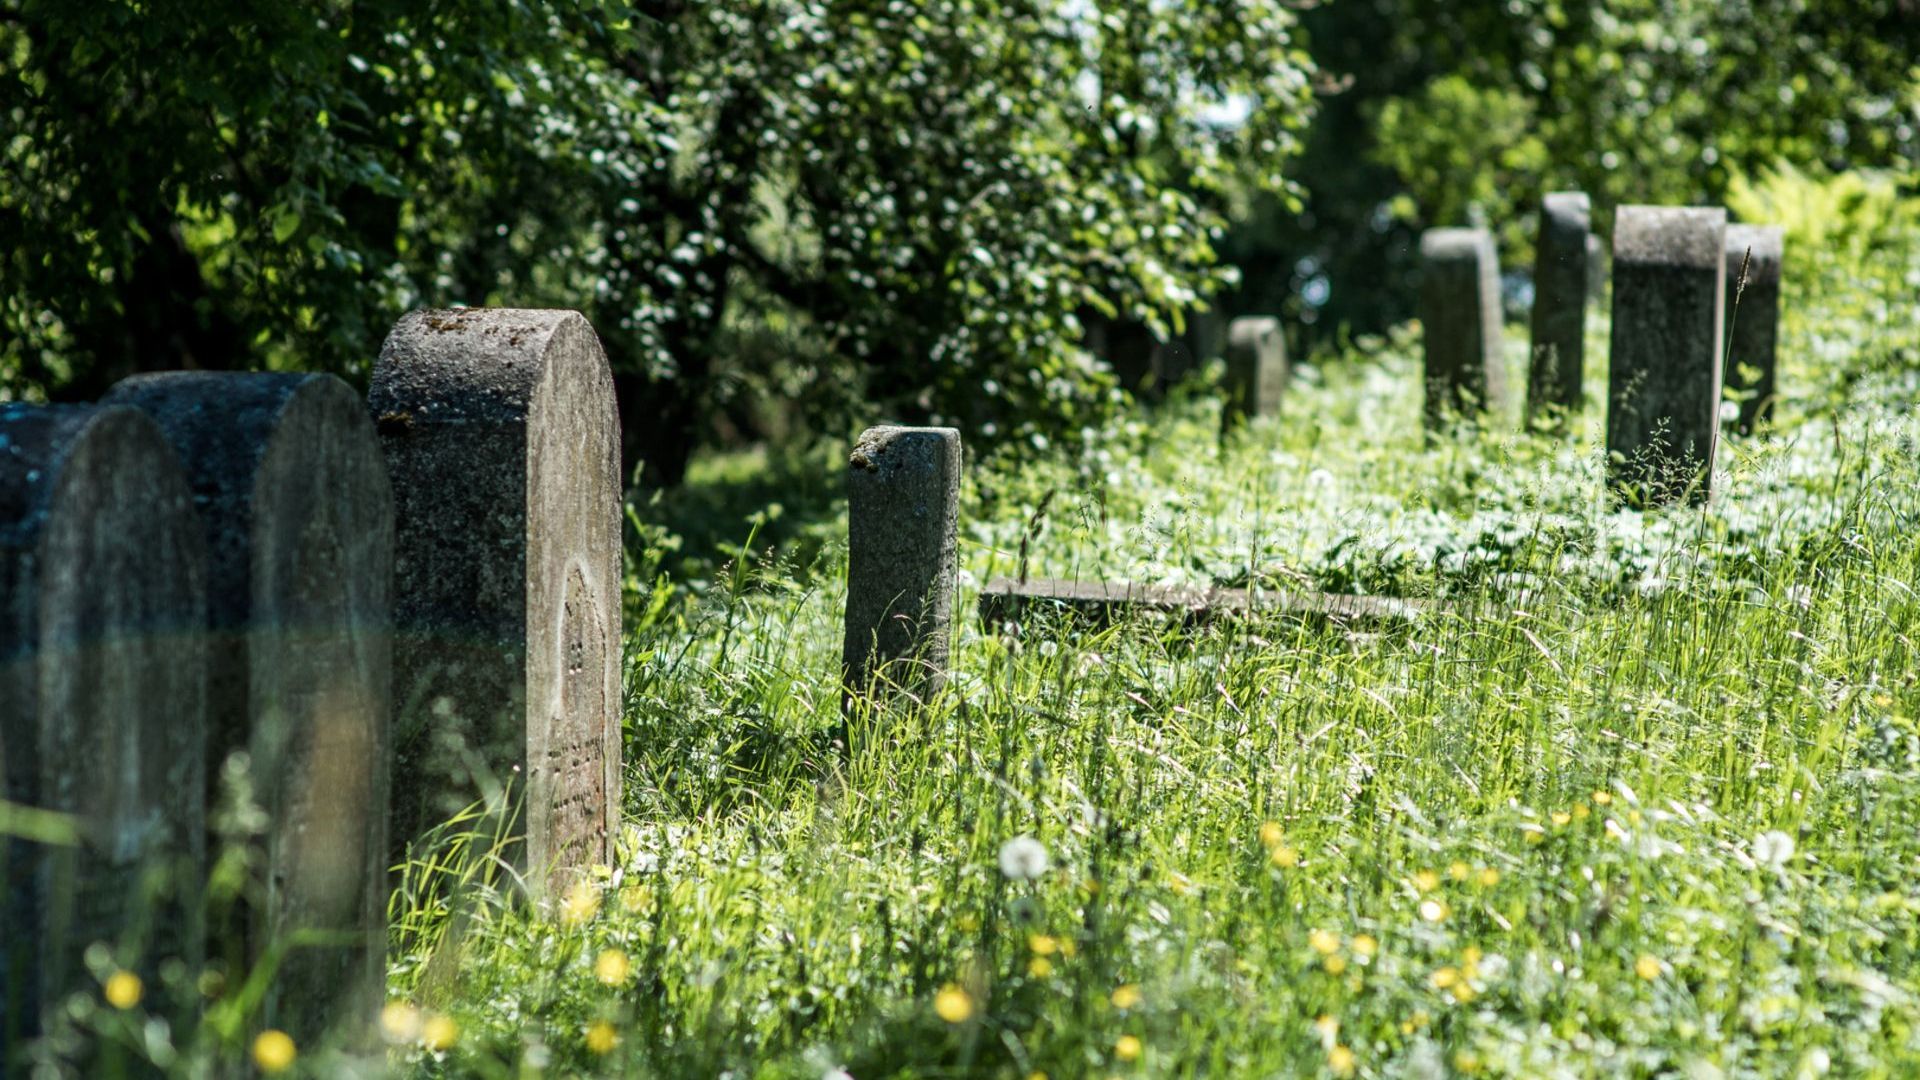 Gargždai Old Jewish Cemetery